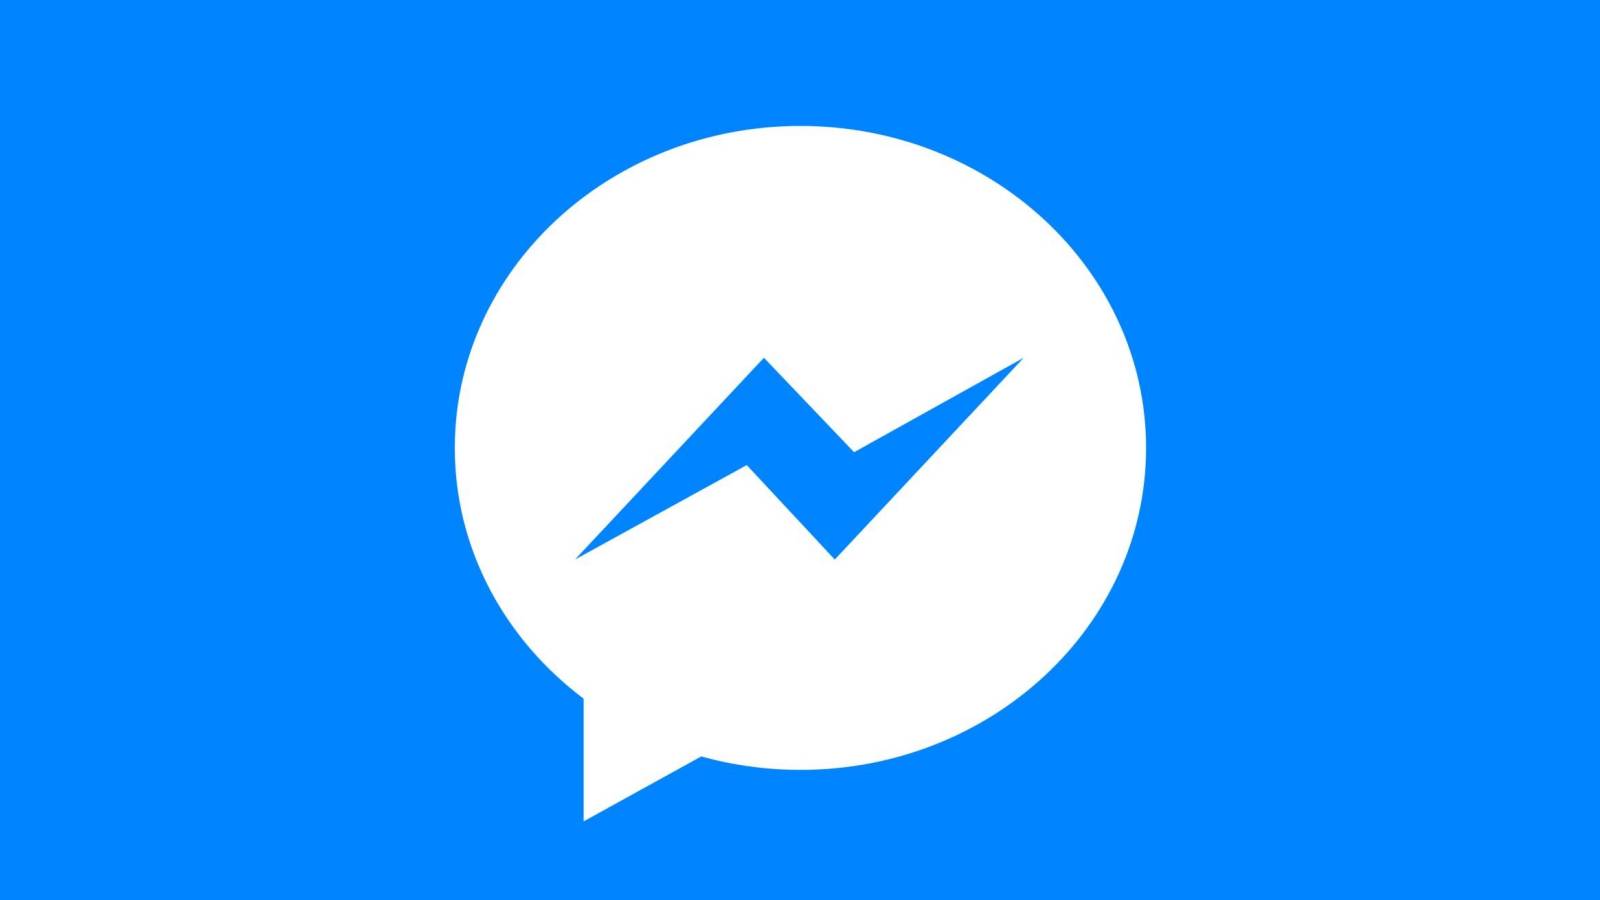 Facebook Messenger ny uppdatering